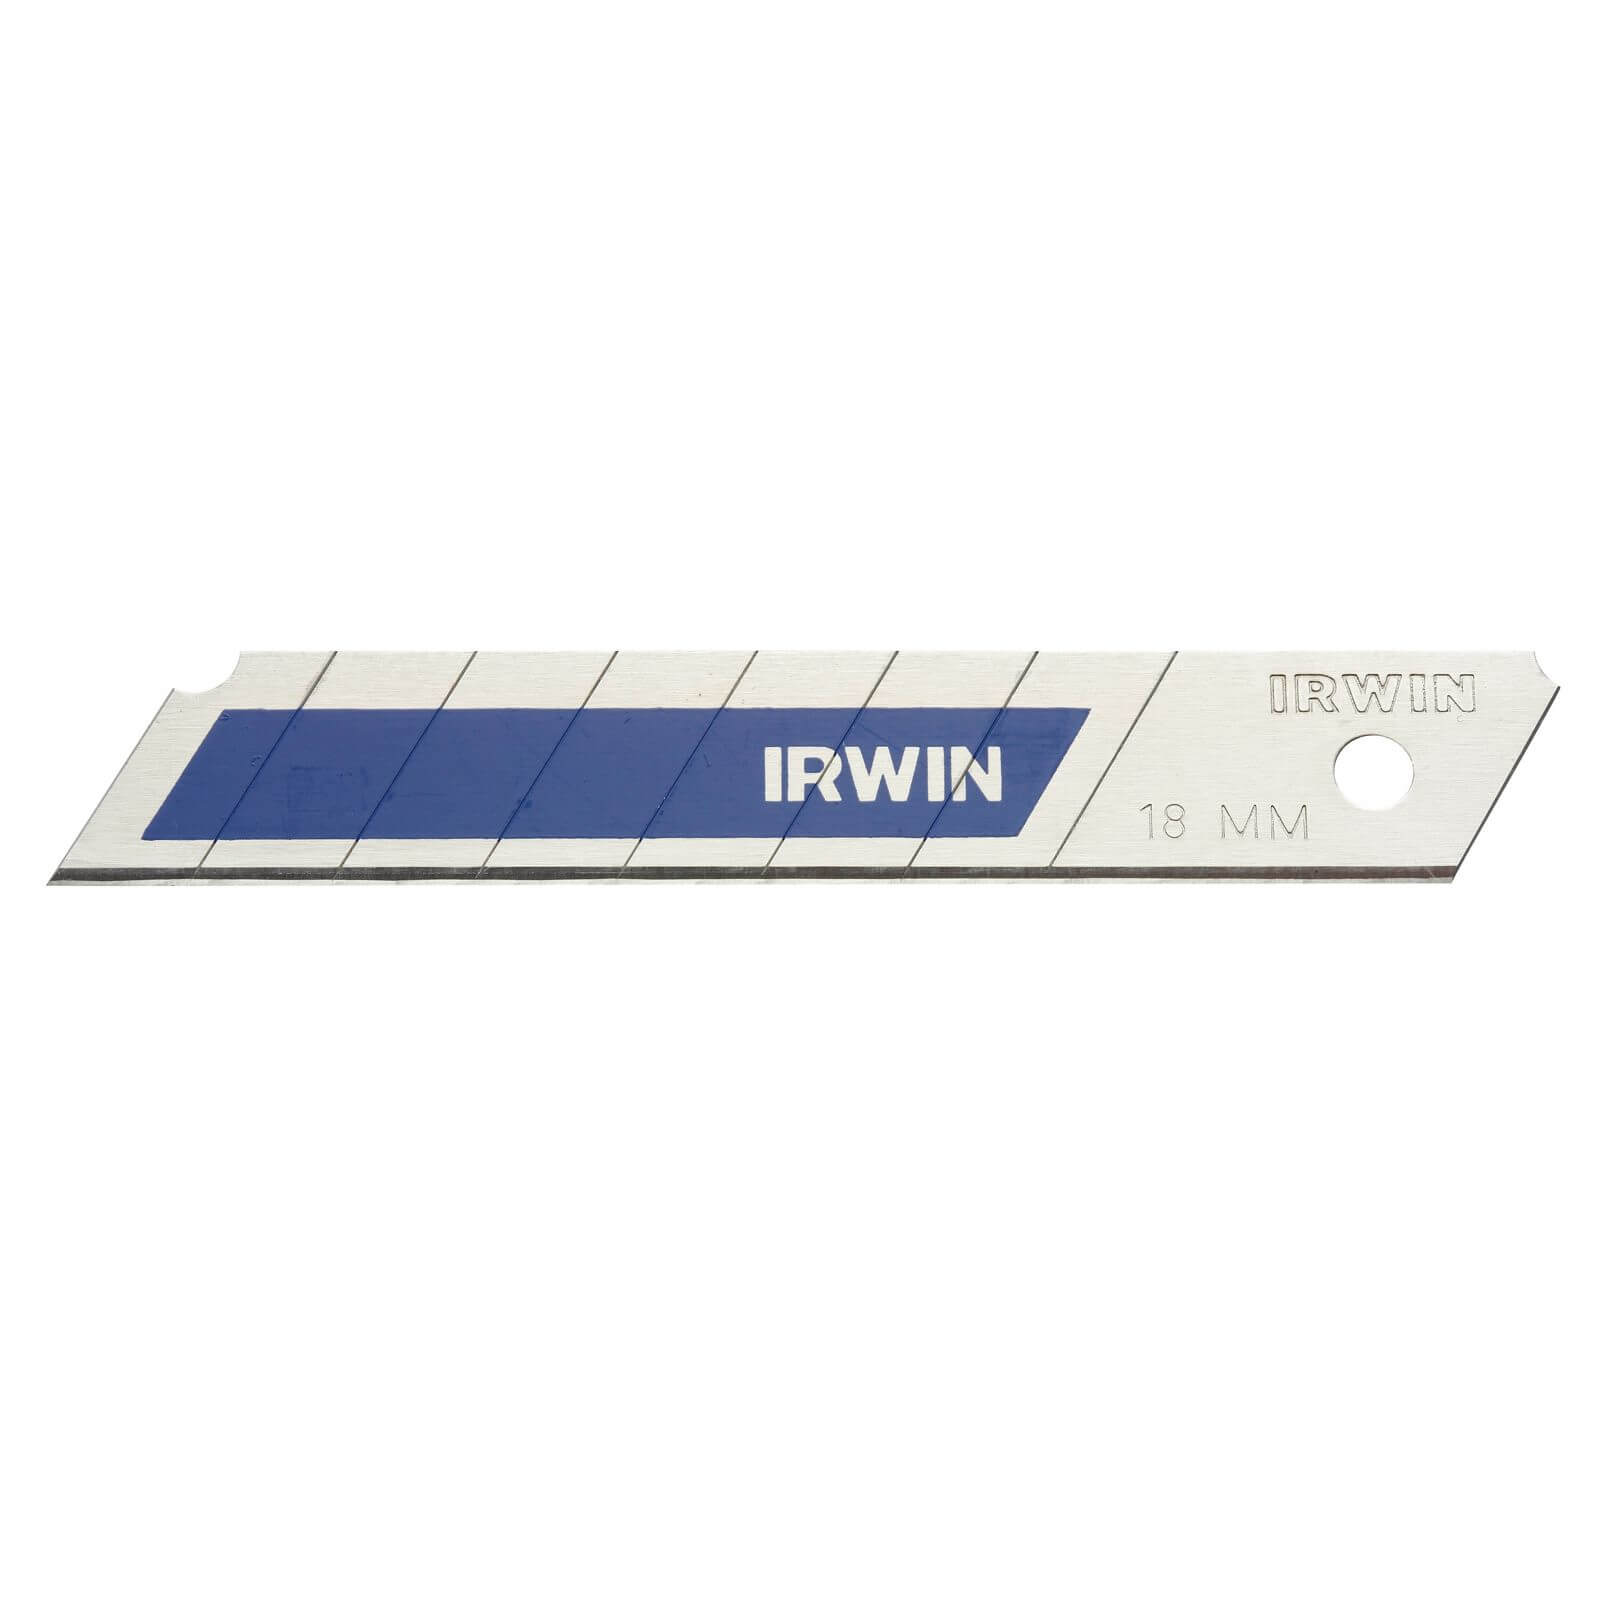 Irwin Bi-Metal Snap Blades 18mm - 5 pack